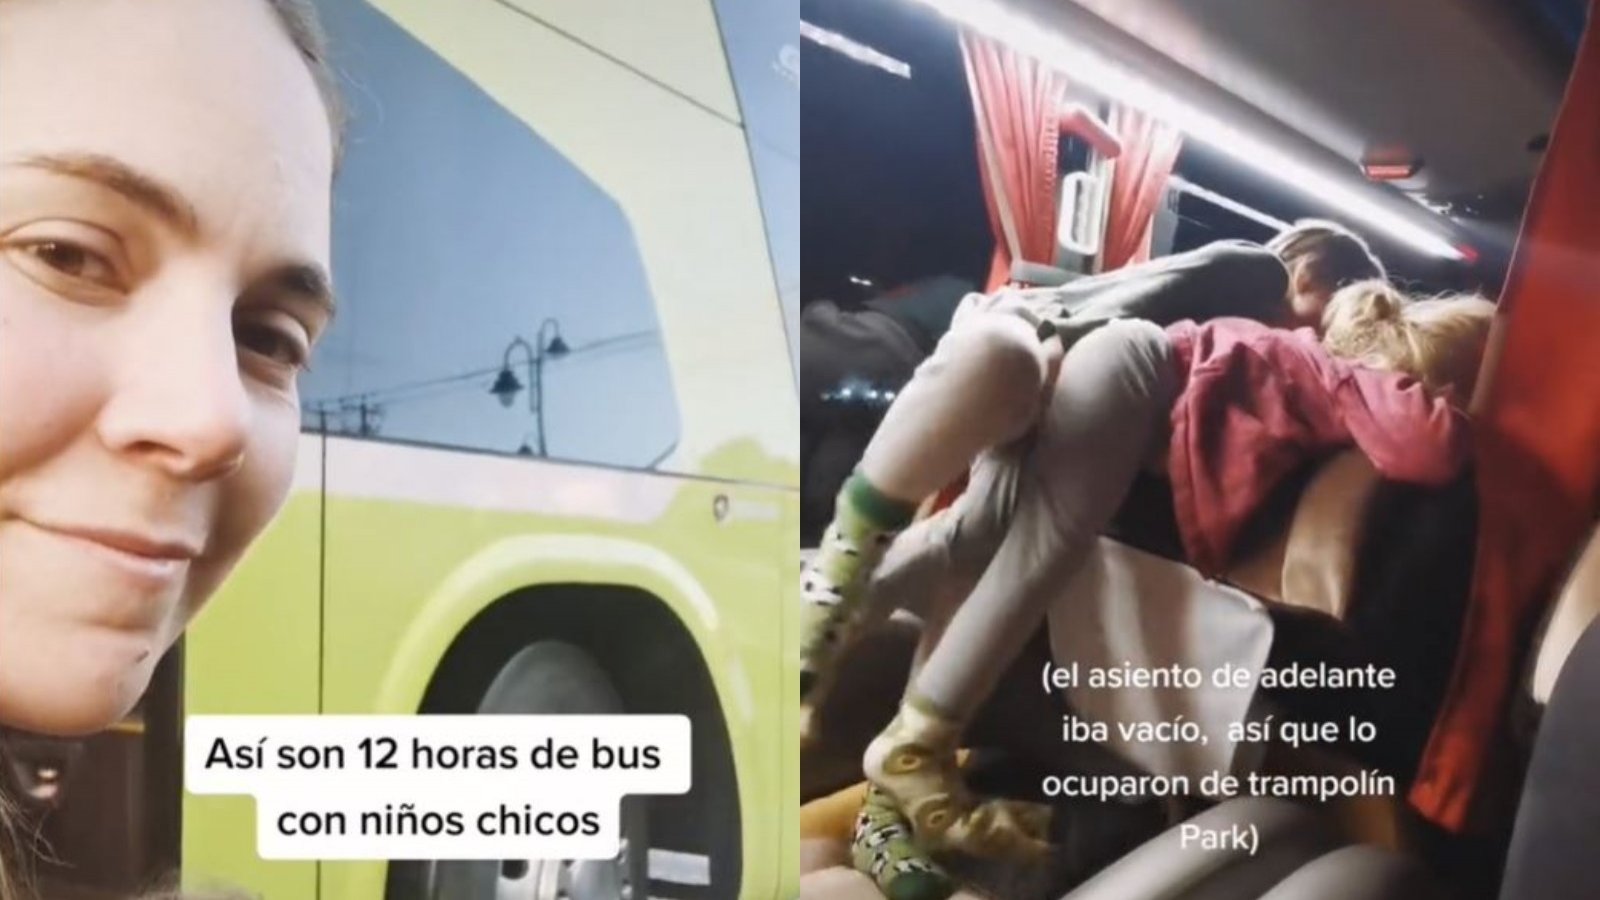 Captura de tiktoker viajando 12 horas con sus hijos en bus